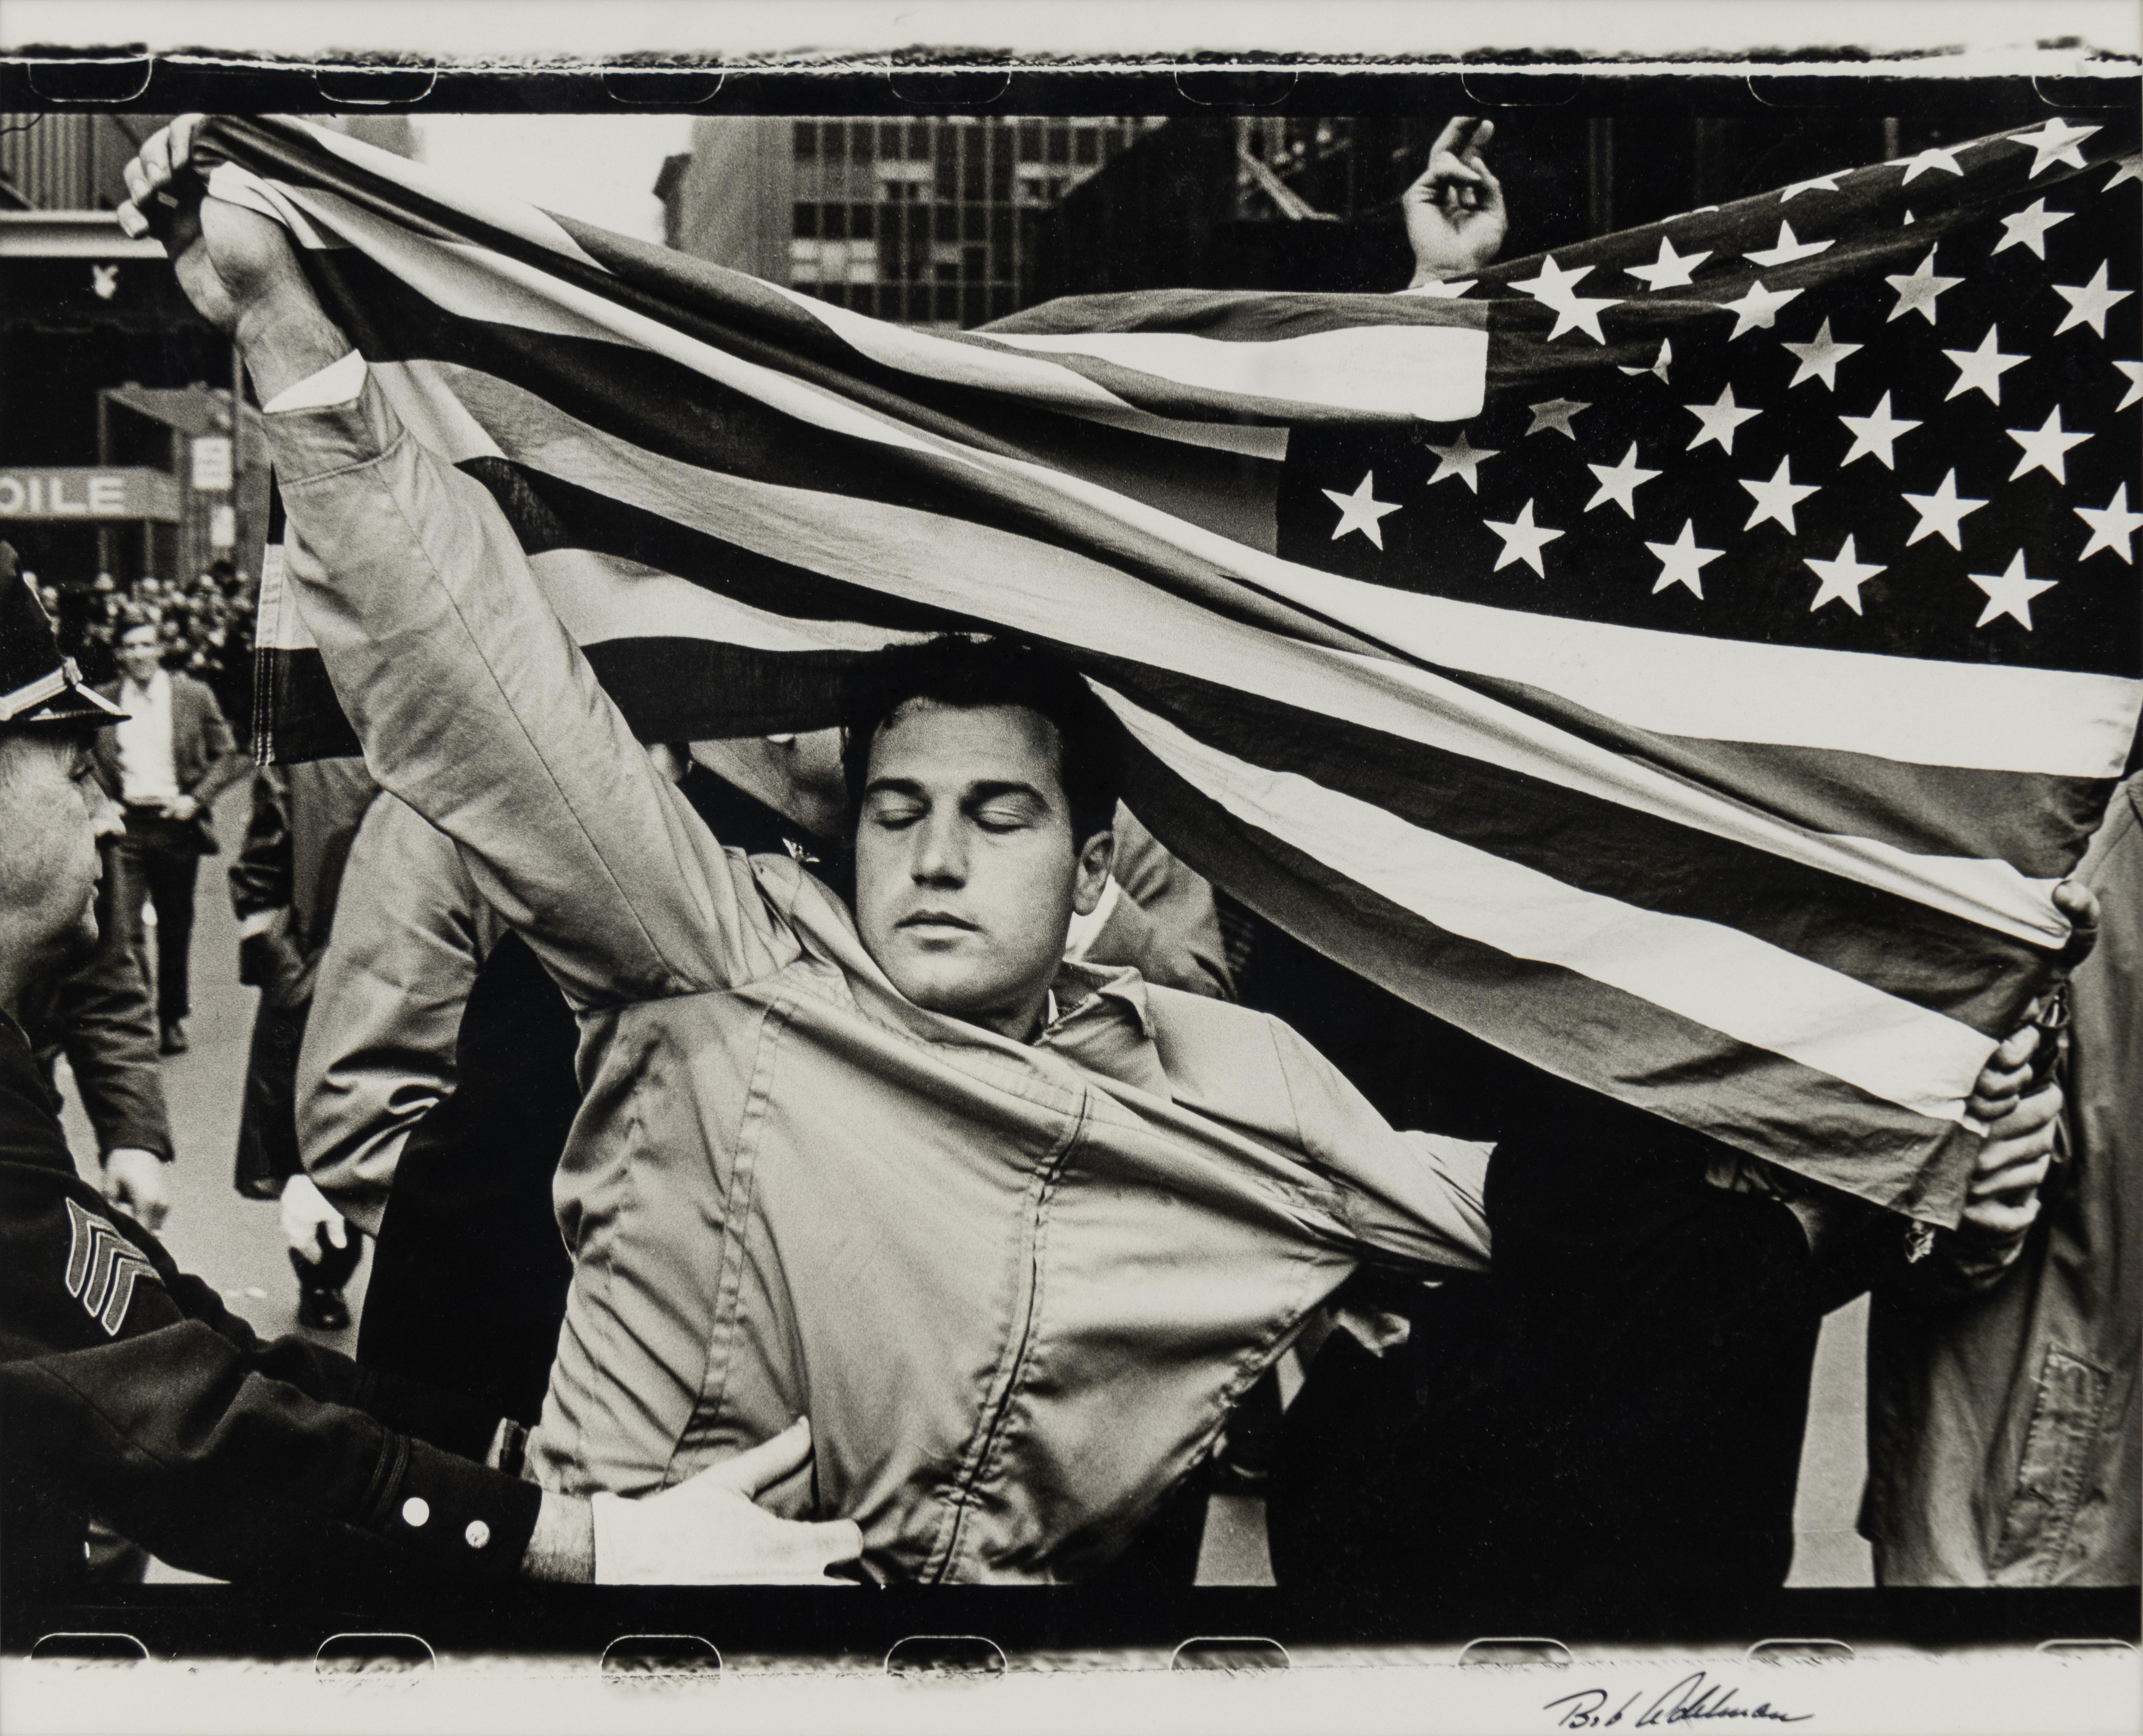 Pro-Vietnam-Kriegs- Demonstrator auf Antikriegs-Demonstration in New York City. – Photograph von Bob Adelman